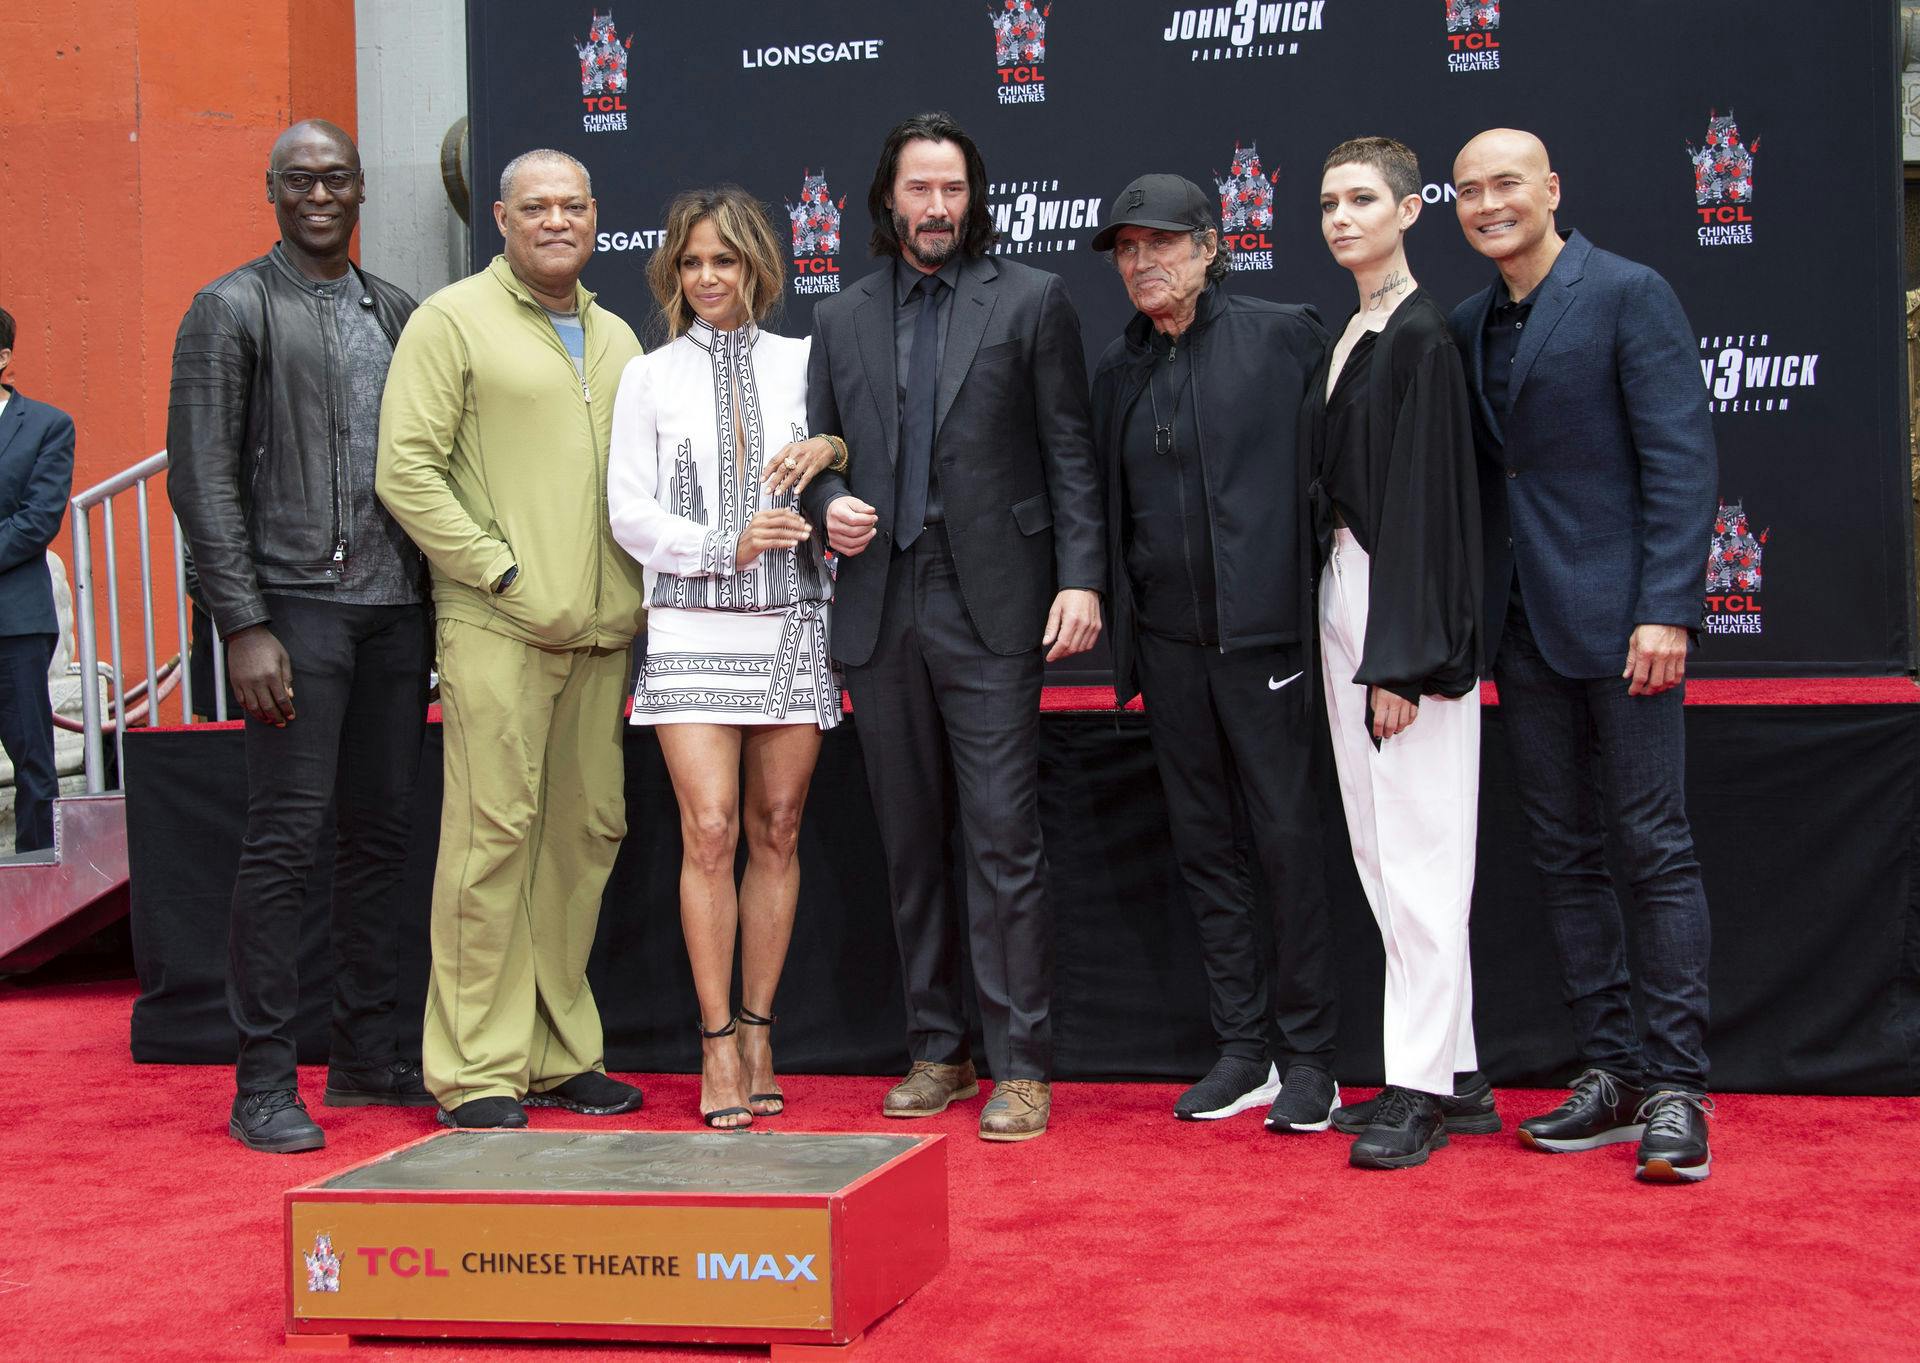 Fra venstre: Lance Reddick, Laurence Fishburne, Halle Berry, Keanu Reeves, Chad Stahelski, Ian McShane, Asia Kate Dillon og Mark Dacascos.
